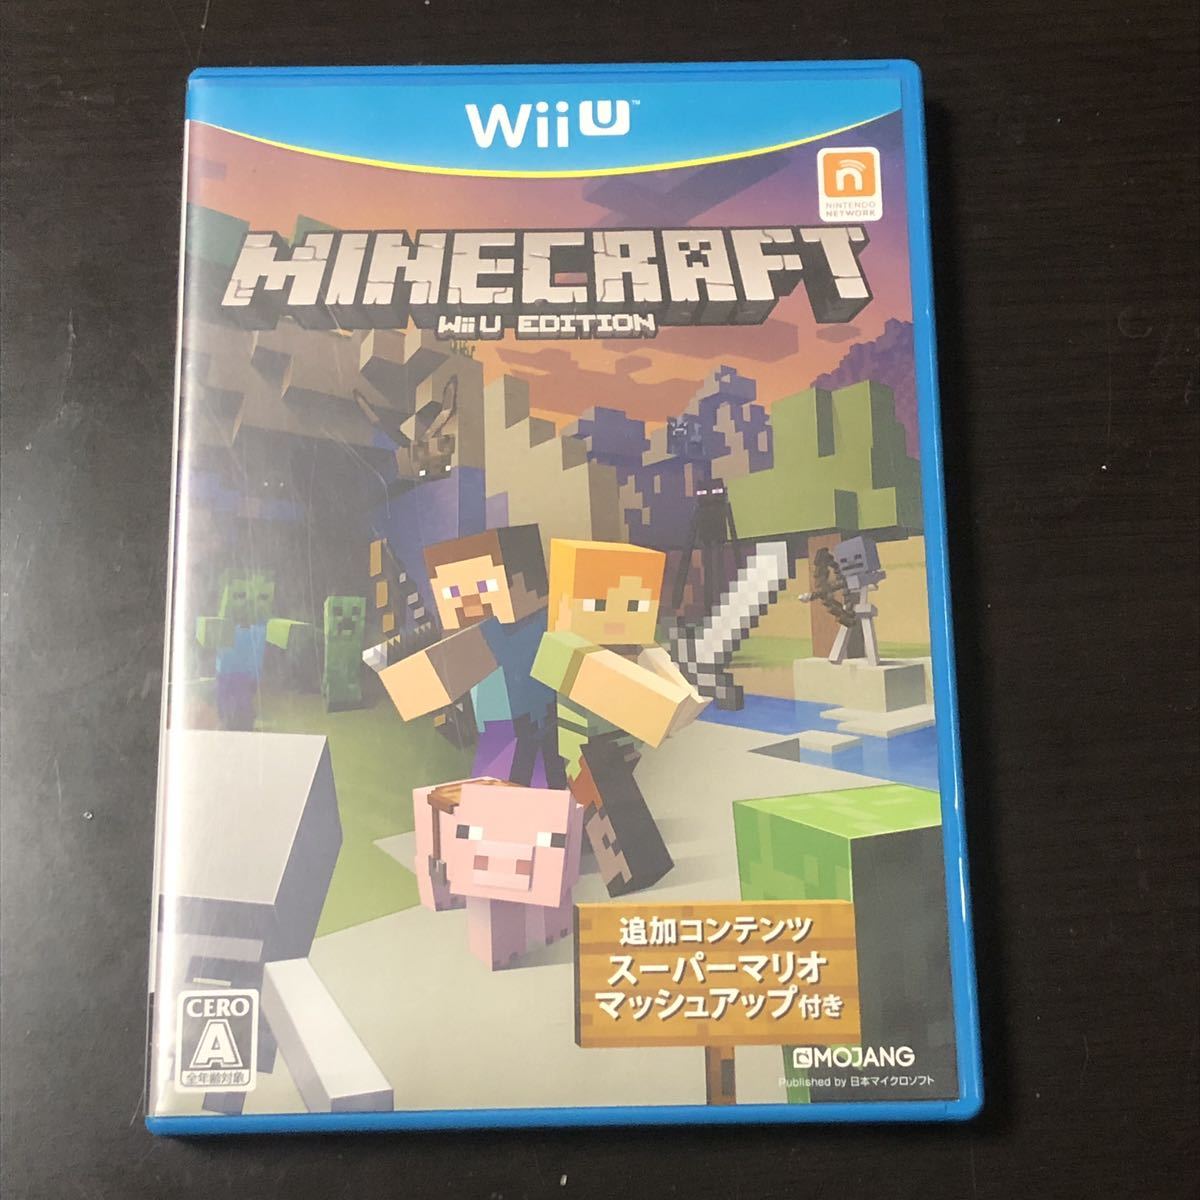 Wiiuソフト マインクラフト Minecraft ニンテンドー 任天堂 Wiiu Edition Wii U専用ソフト 売買されたオークション情報 Yahooの商品情報をアーカイブ公開 オークファン Aucfan Com